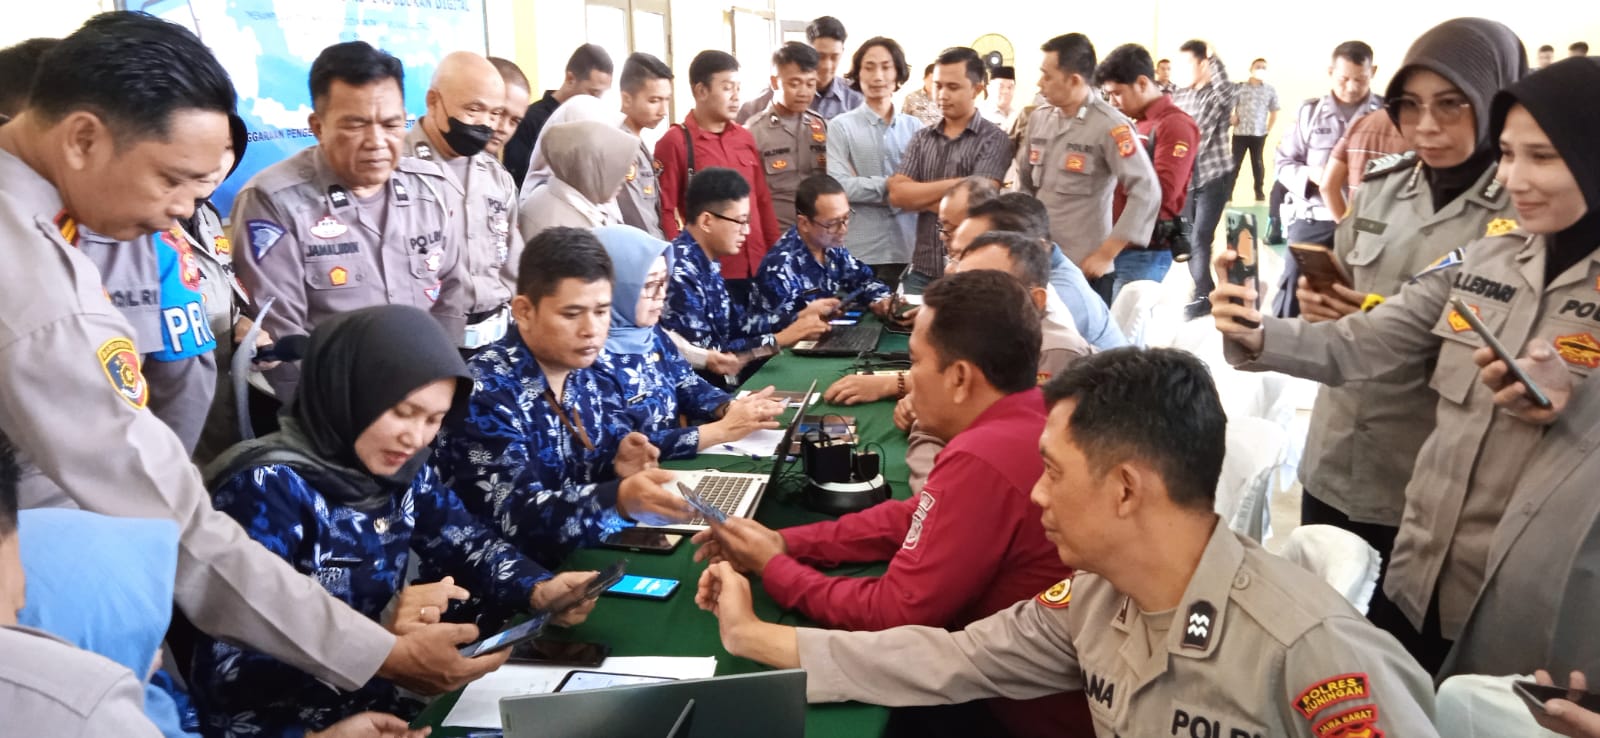 KEREN, Aktivasi KTP Digital Capai 7.000 Lebih, Bisa di Kantor Kecamatan Terdekat